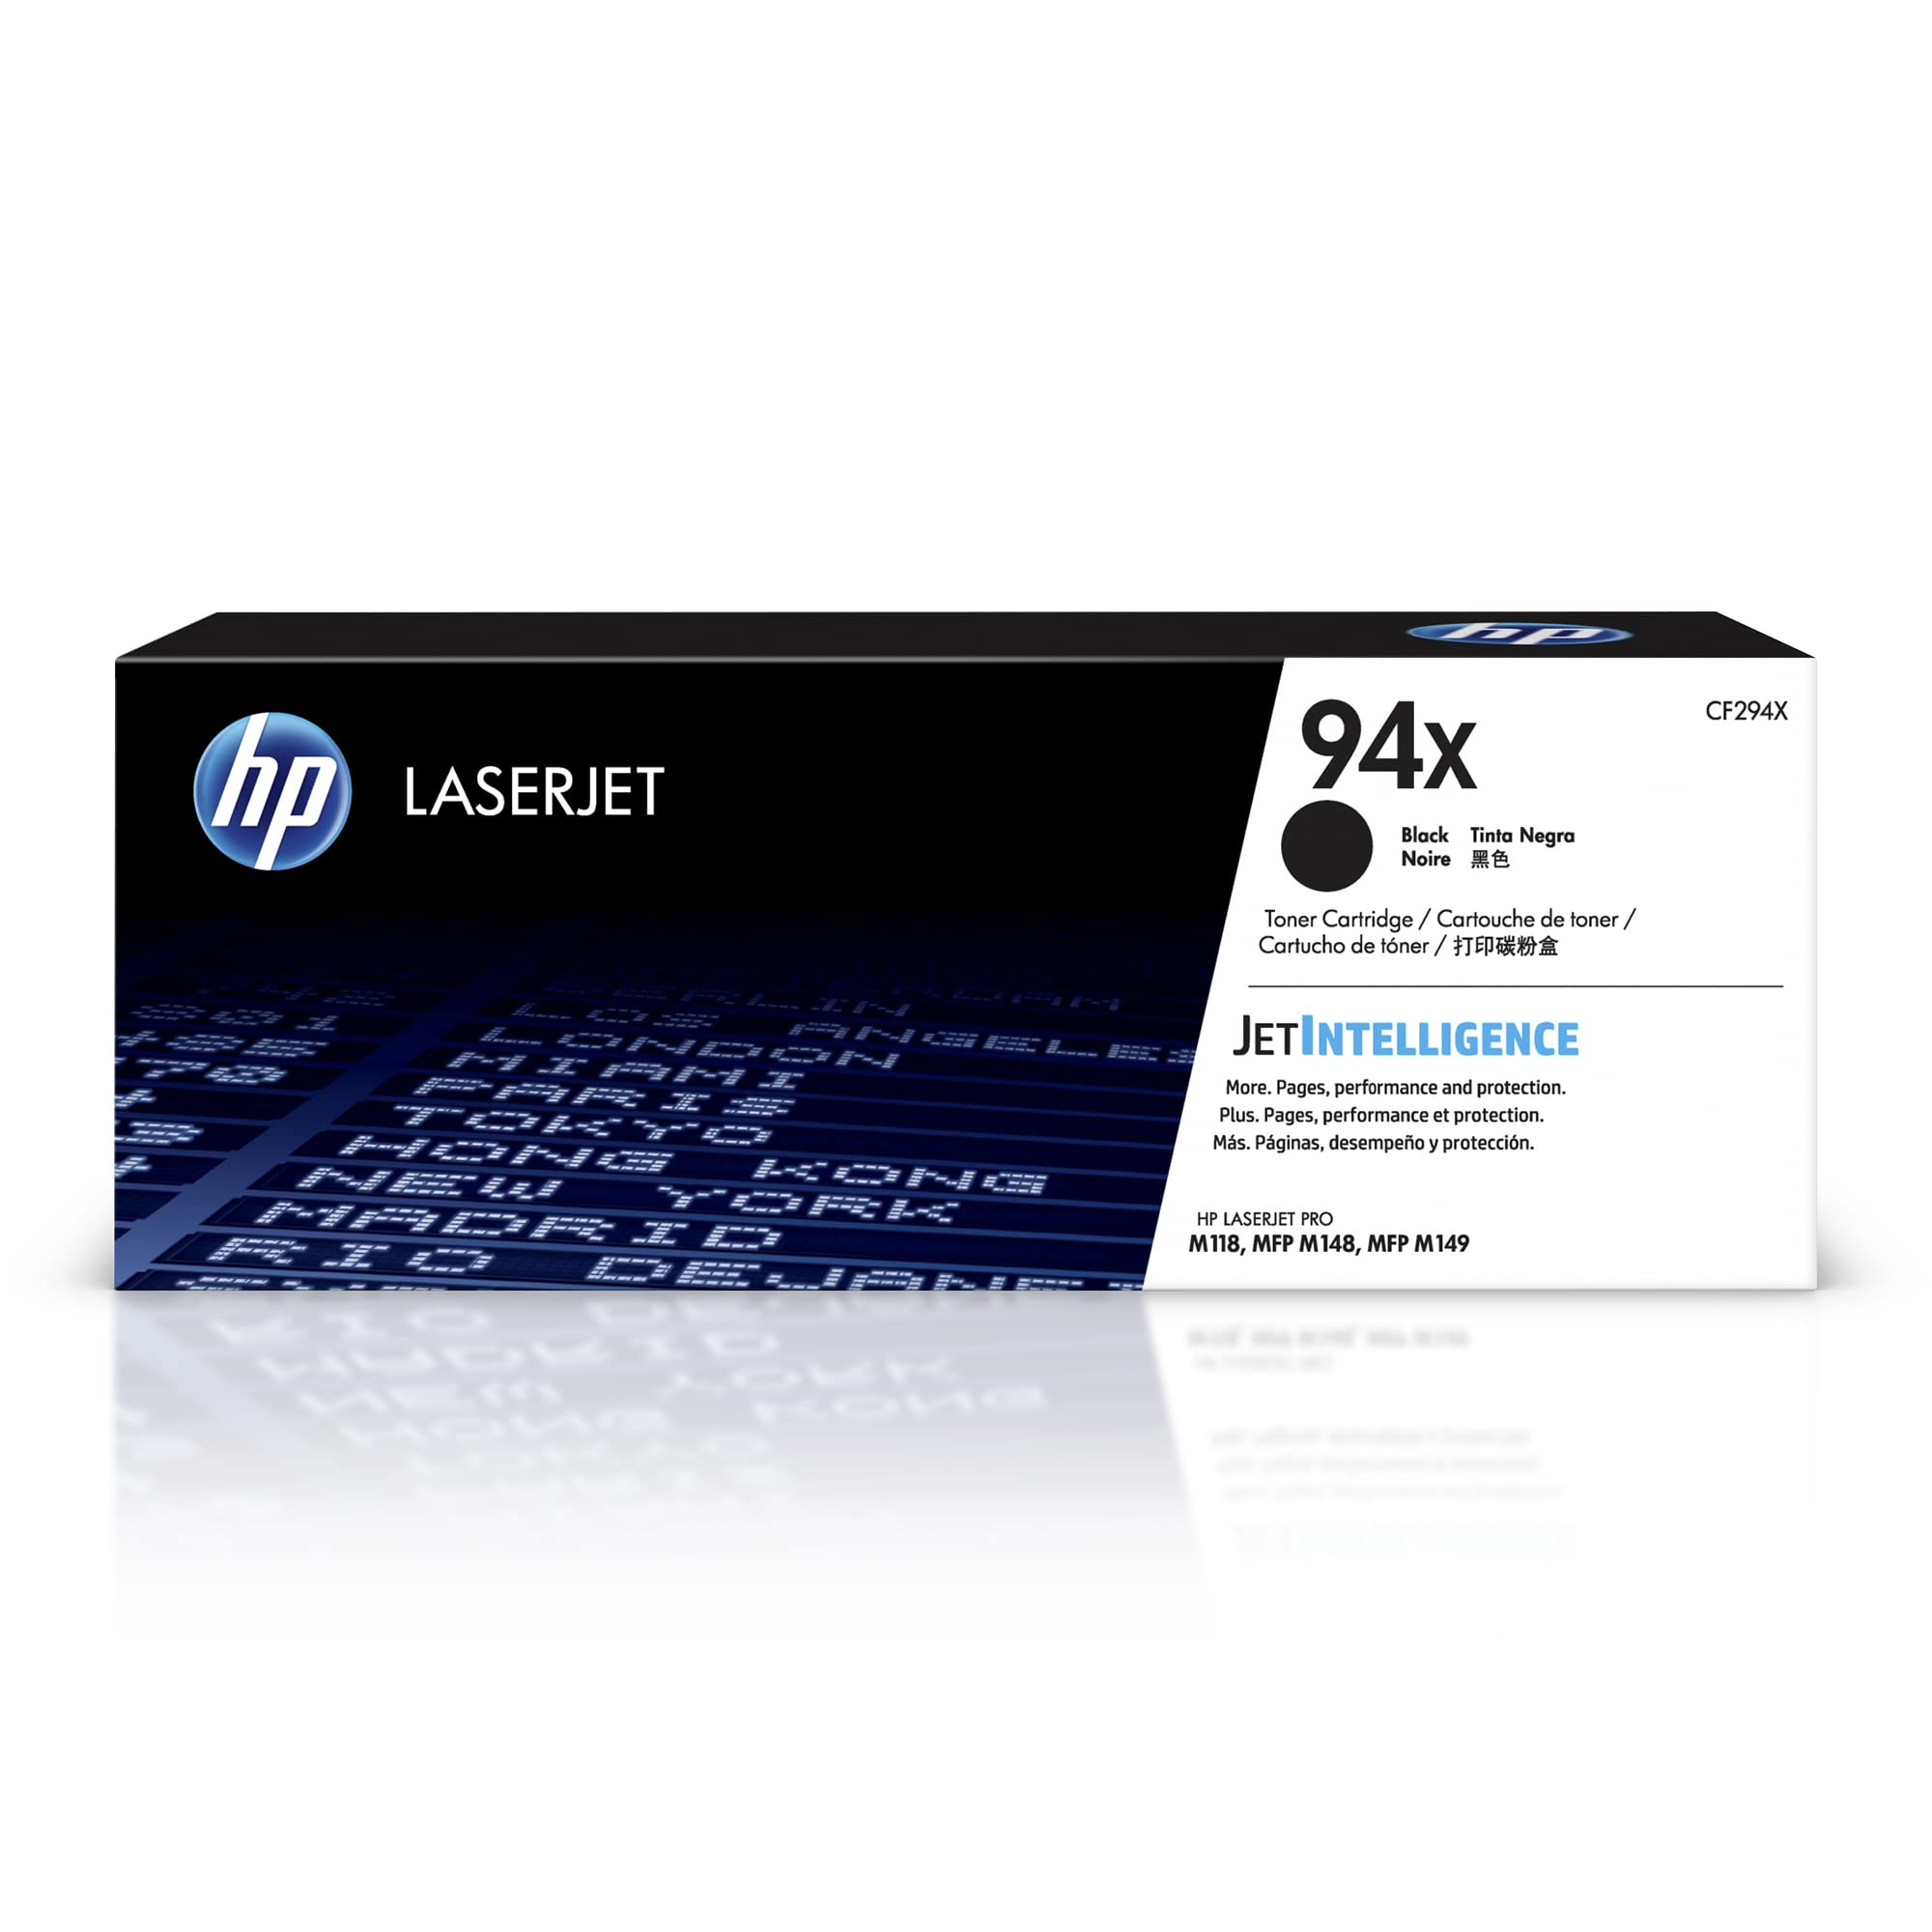 HP 94X 黑色高印量碳粉盒 |适用于 LaserJet Pro M118 系列； LaserJet Pro MFP M148、M149 系列 | CF294X